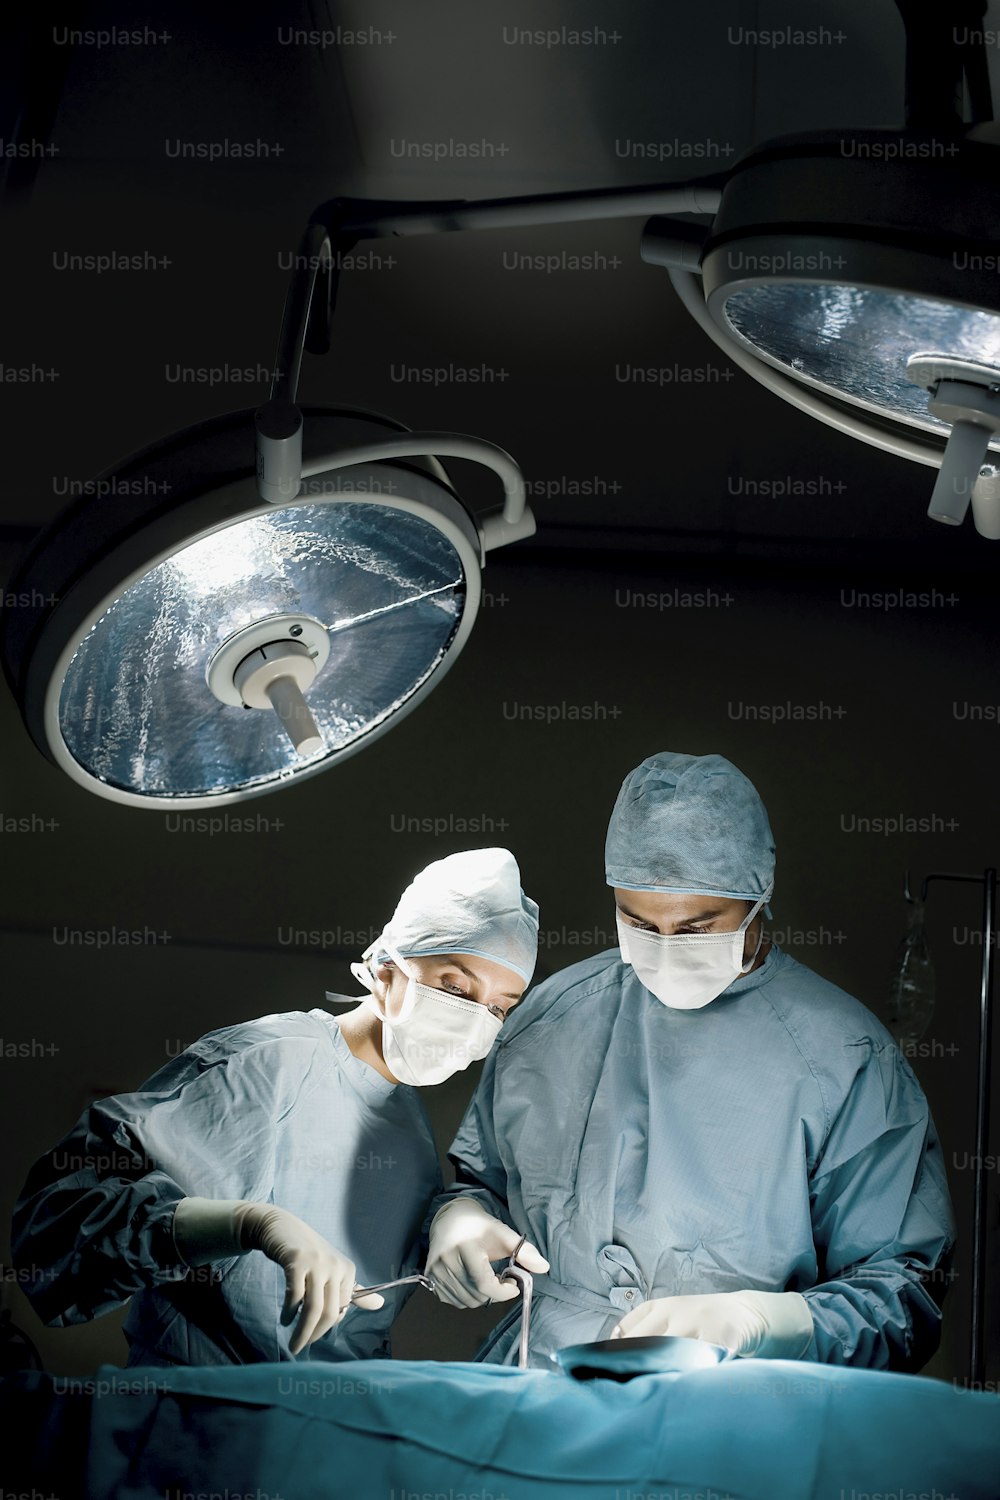 deux chirurgiens opérant un patient dans une salle d’opération